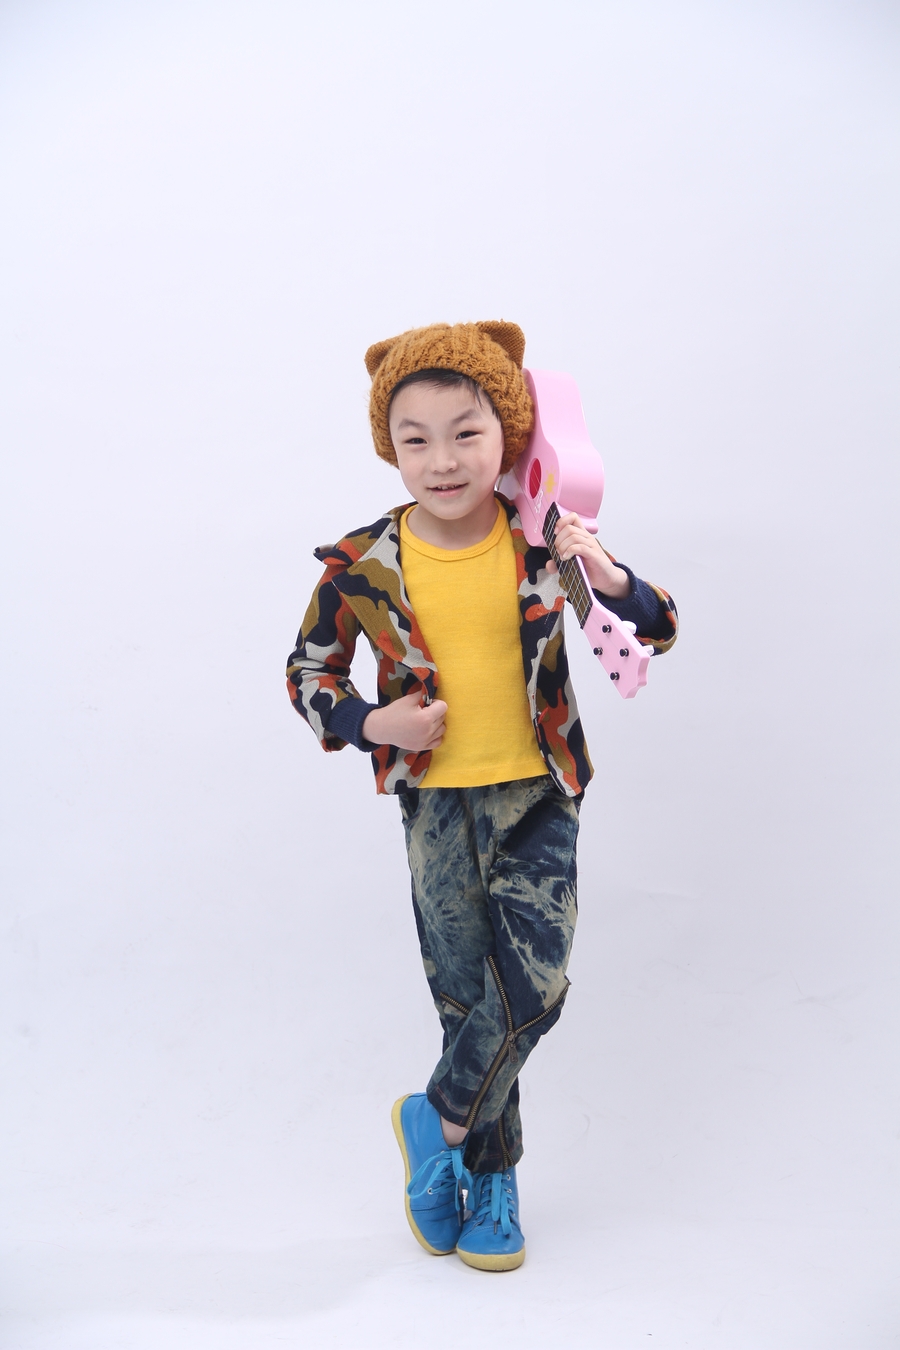 【孩子5岁生日摄影图片】上海徐家汇人像摄影